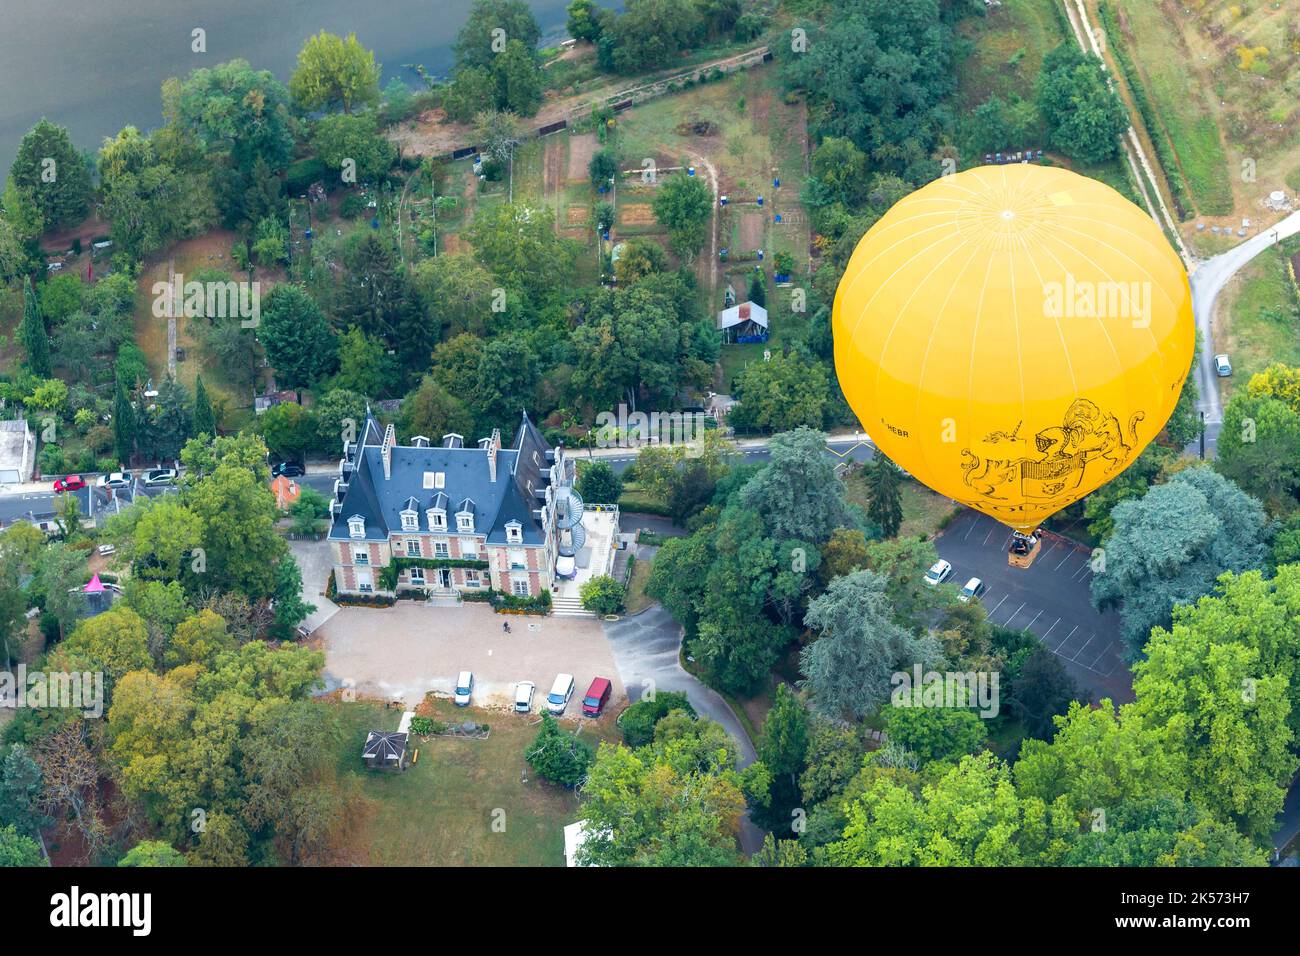 France, Indre et Loire, Amboise, le centre de traitement Malvau spécialisé en addictologie, à partir d'un ballon à air chaud avec l'opérateur Balloon Revolution (vue aérienne) Banque D'Images